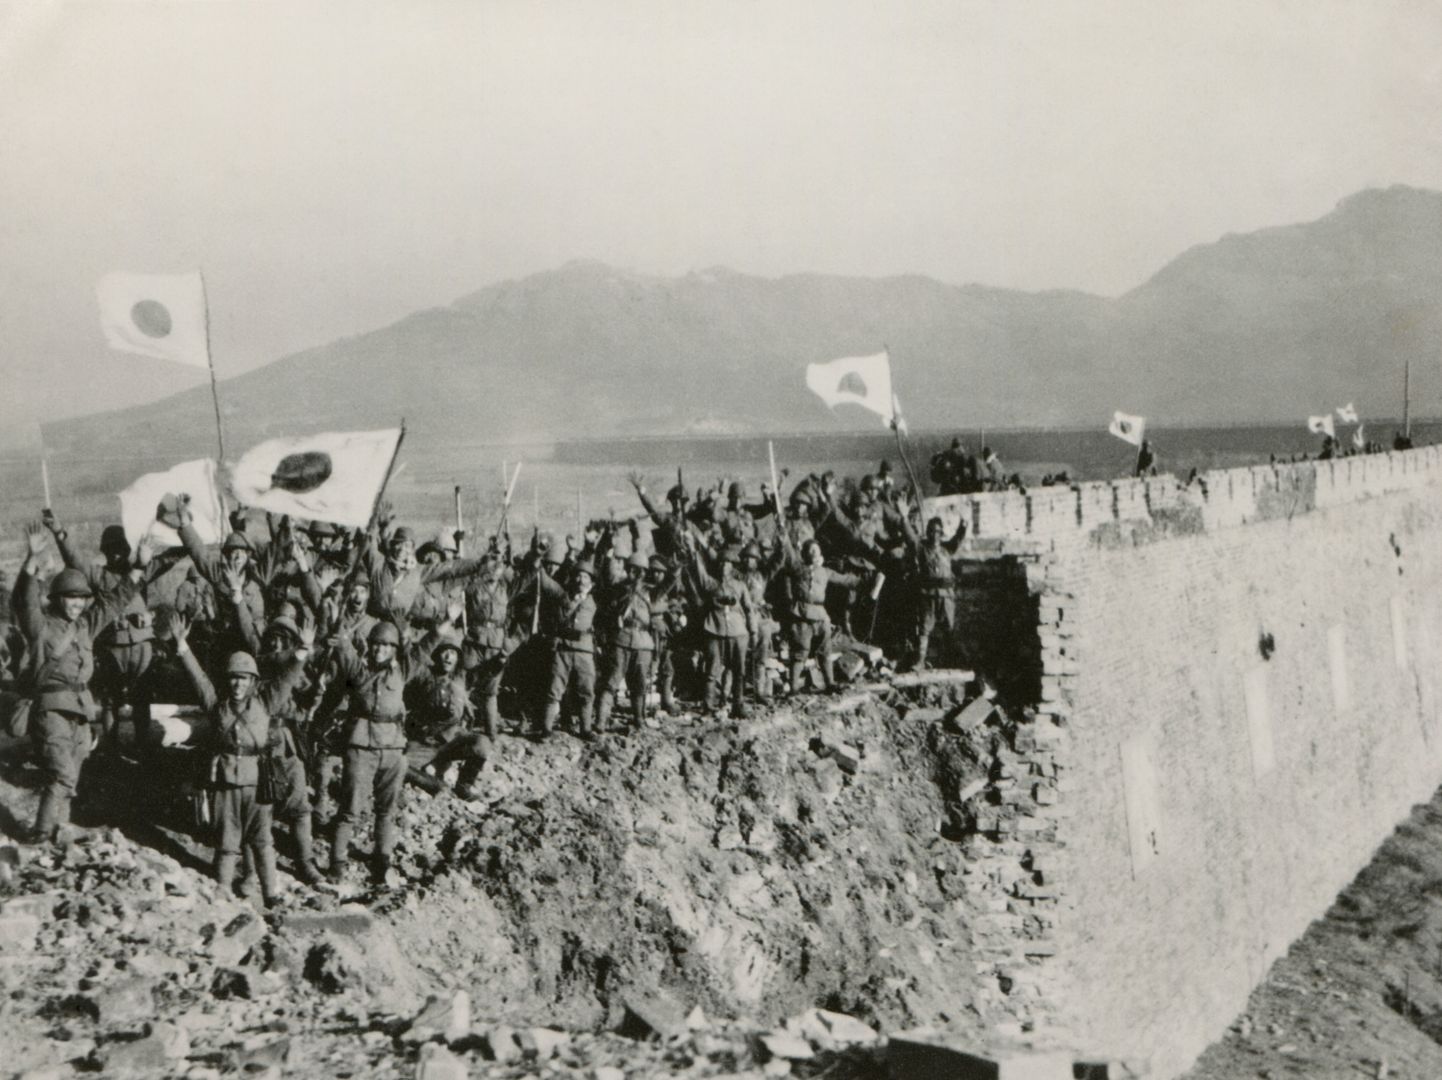 Jaapani sõdurid levitamas Jaapani lippe pärast Hiina Nankingi vallutamist. Nankingi lahing kestis 13. - 31. detsember 1937. Jaapan okupeeris Hiinat 1931 - 1945